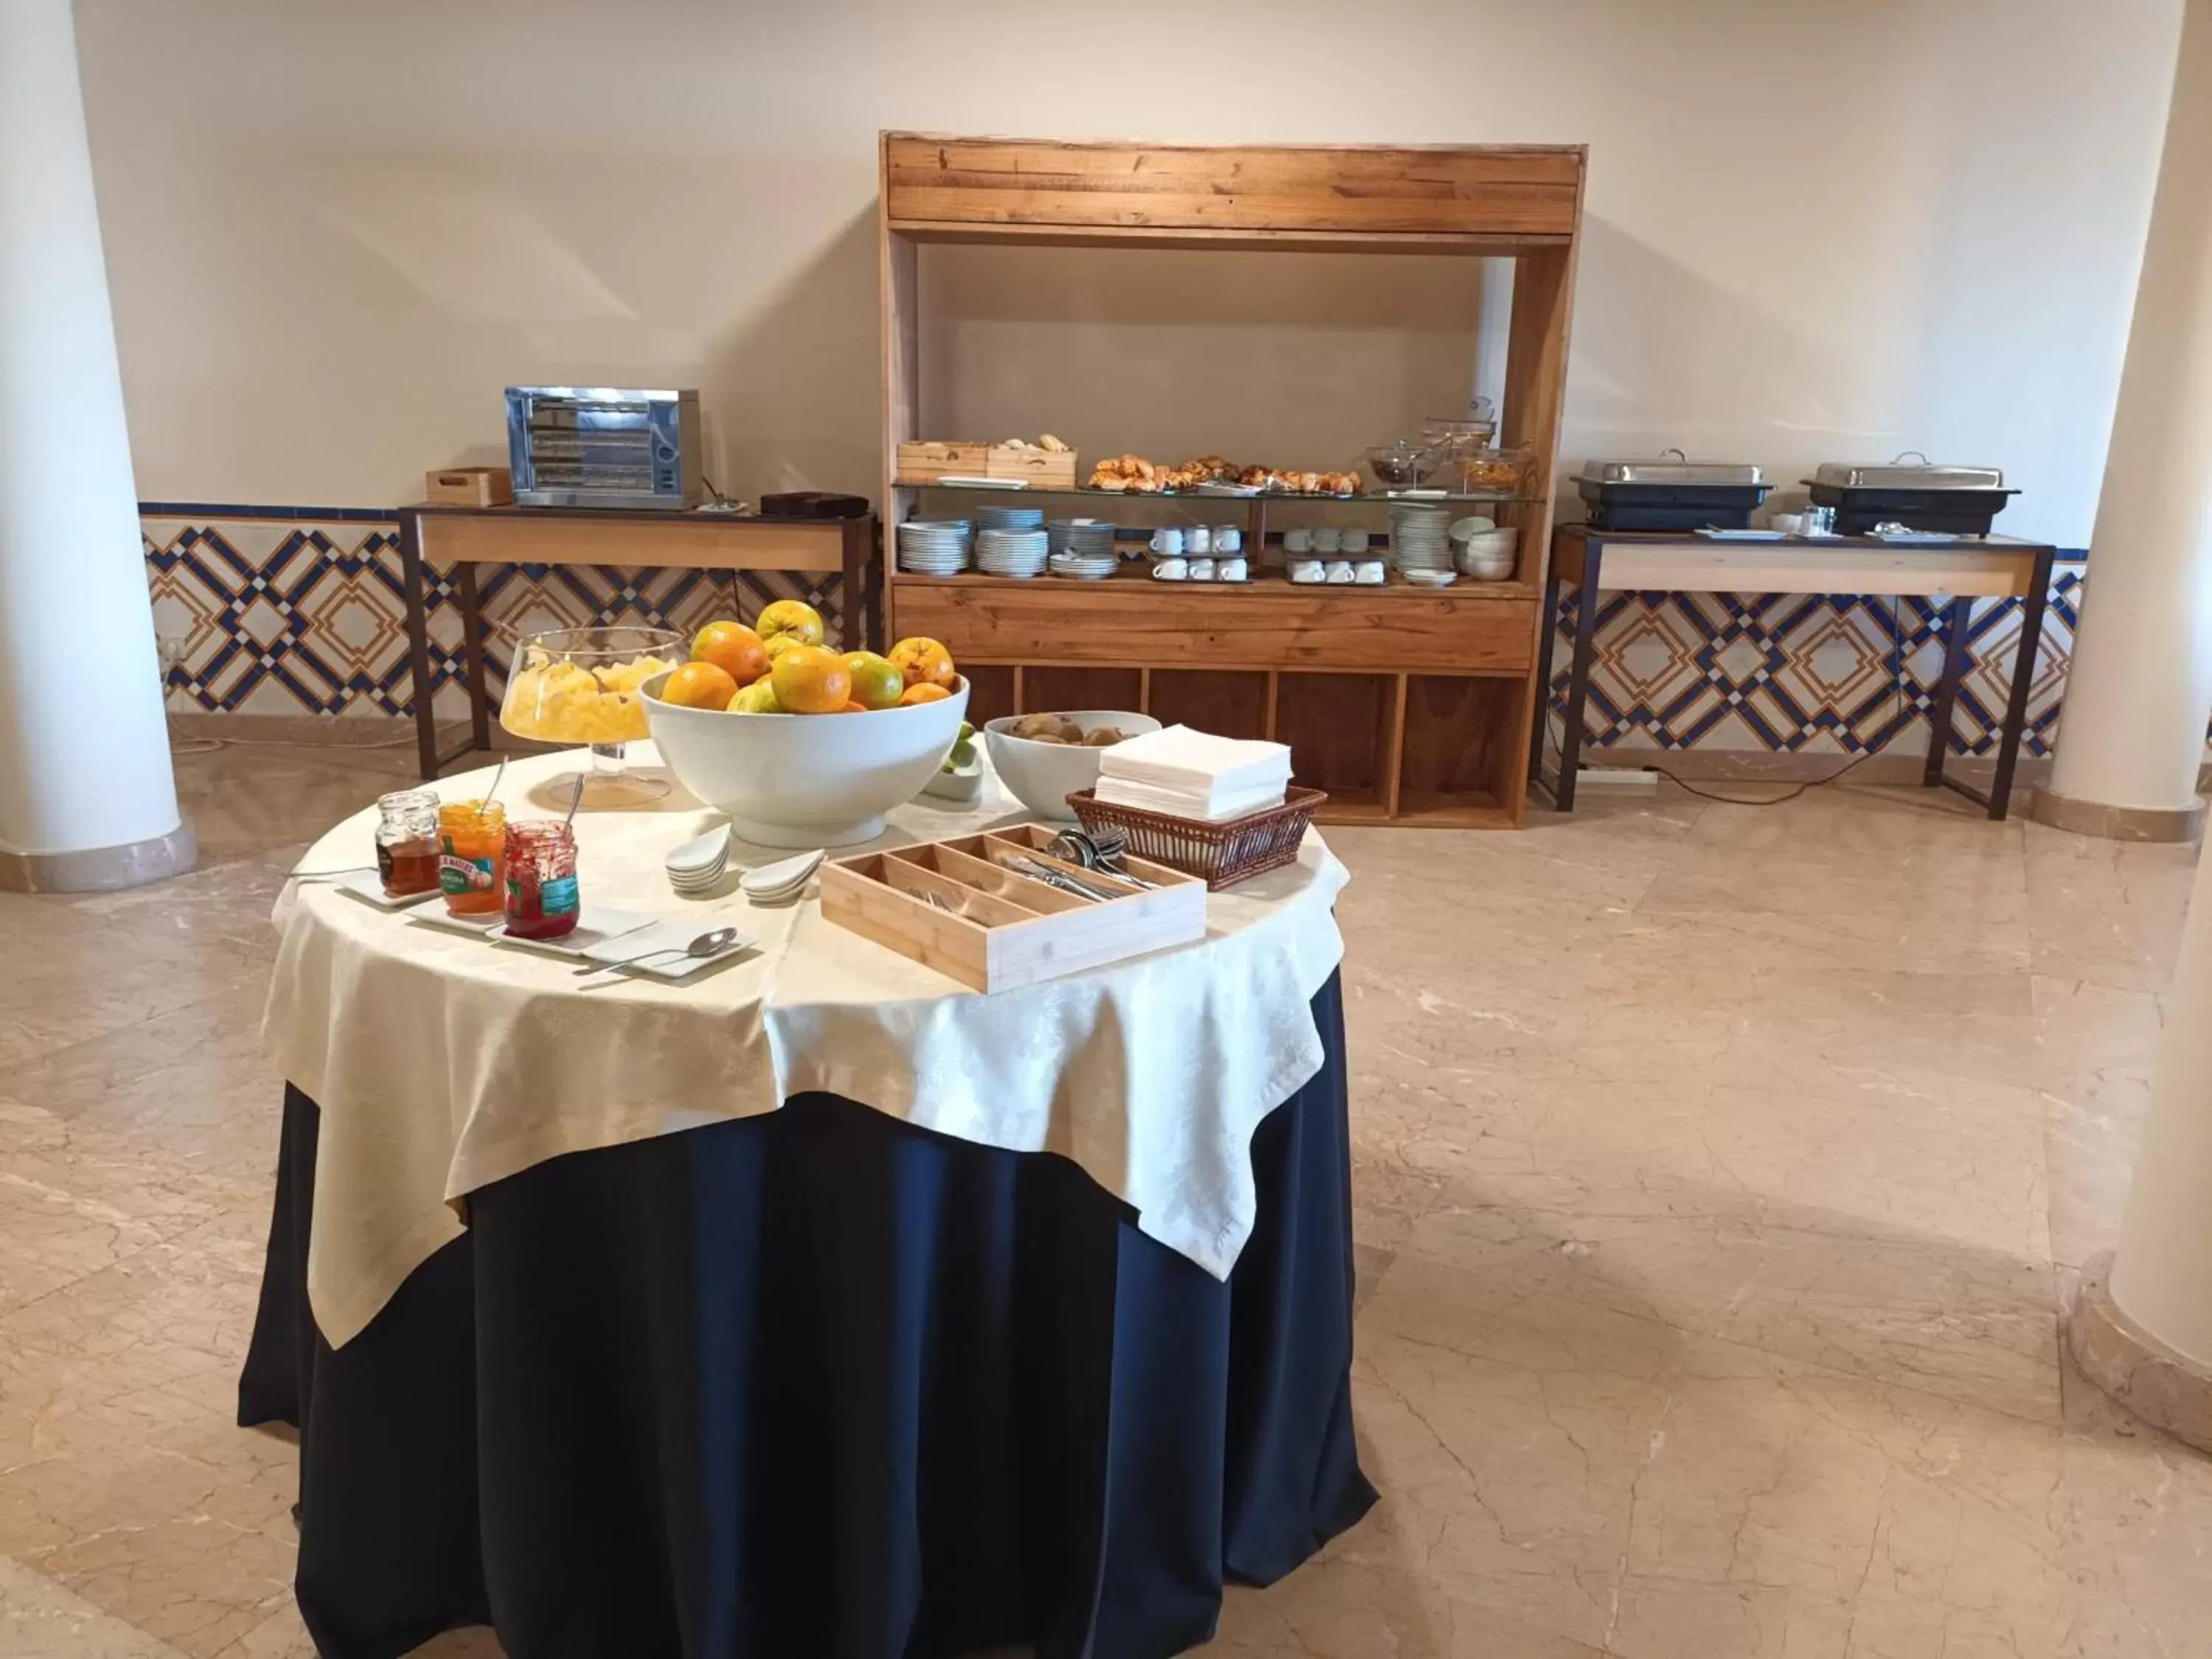 Buffet breakfast in Vilar Oporto Hotel